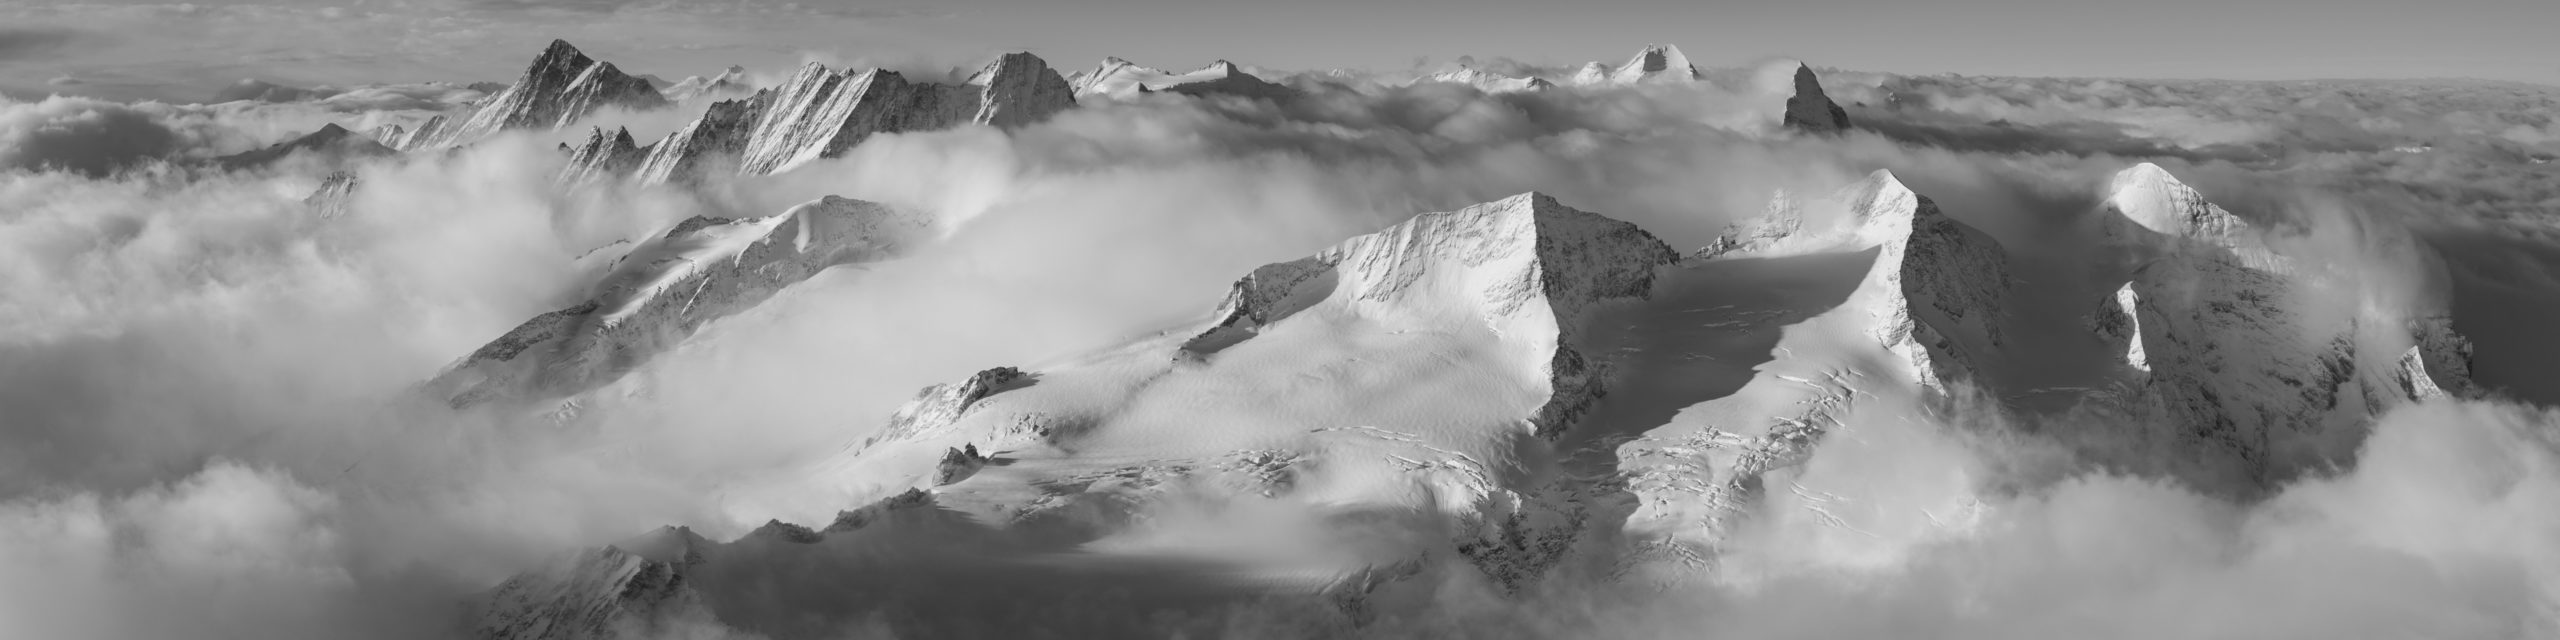 Panorama montagne noir et blanc des Alpes Bernoises en suisse